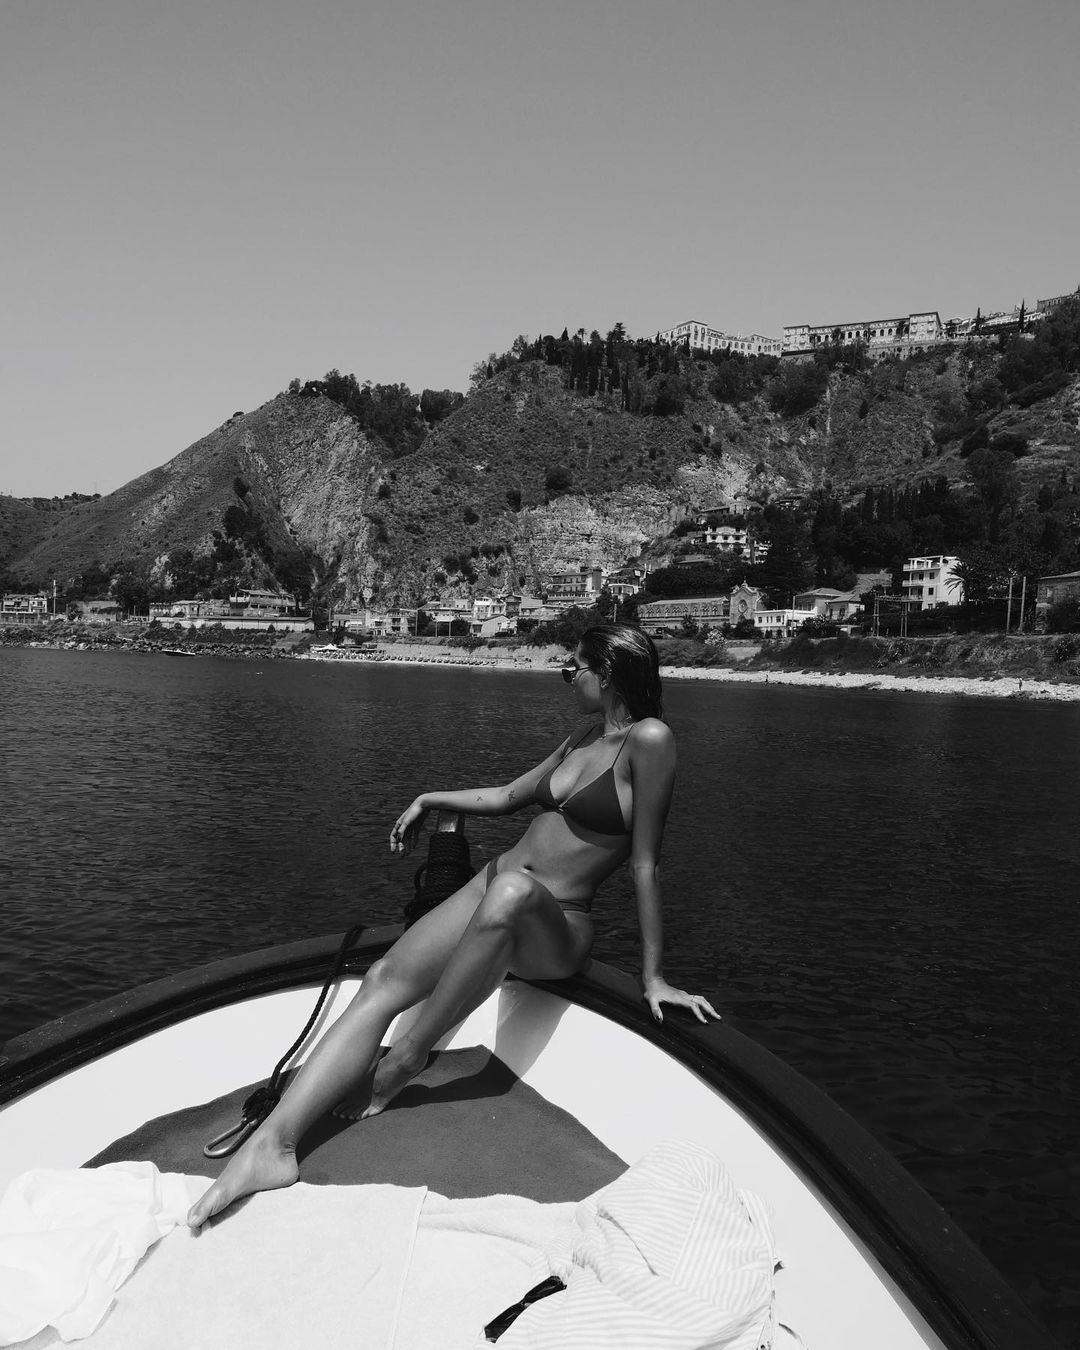 Sasha encantou seguidores em clique no mar da Itália (Foto: Reprodução/Instagram)